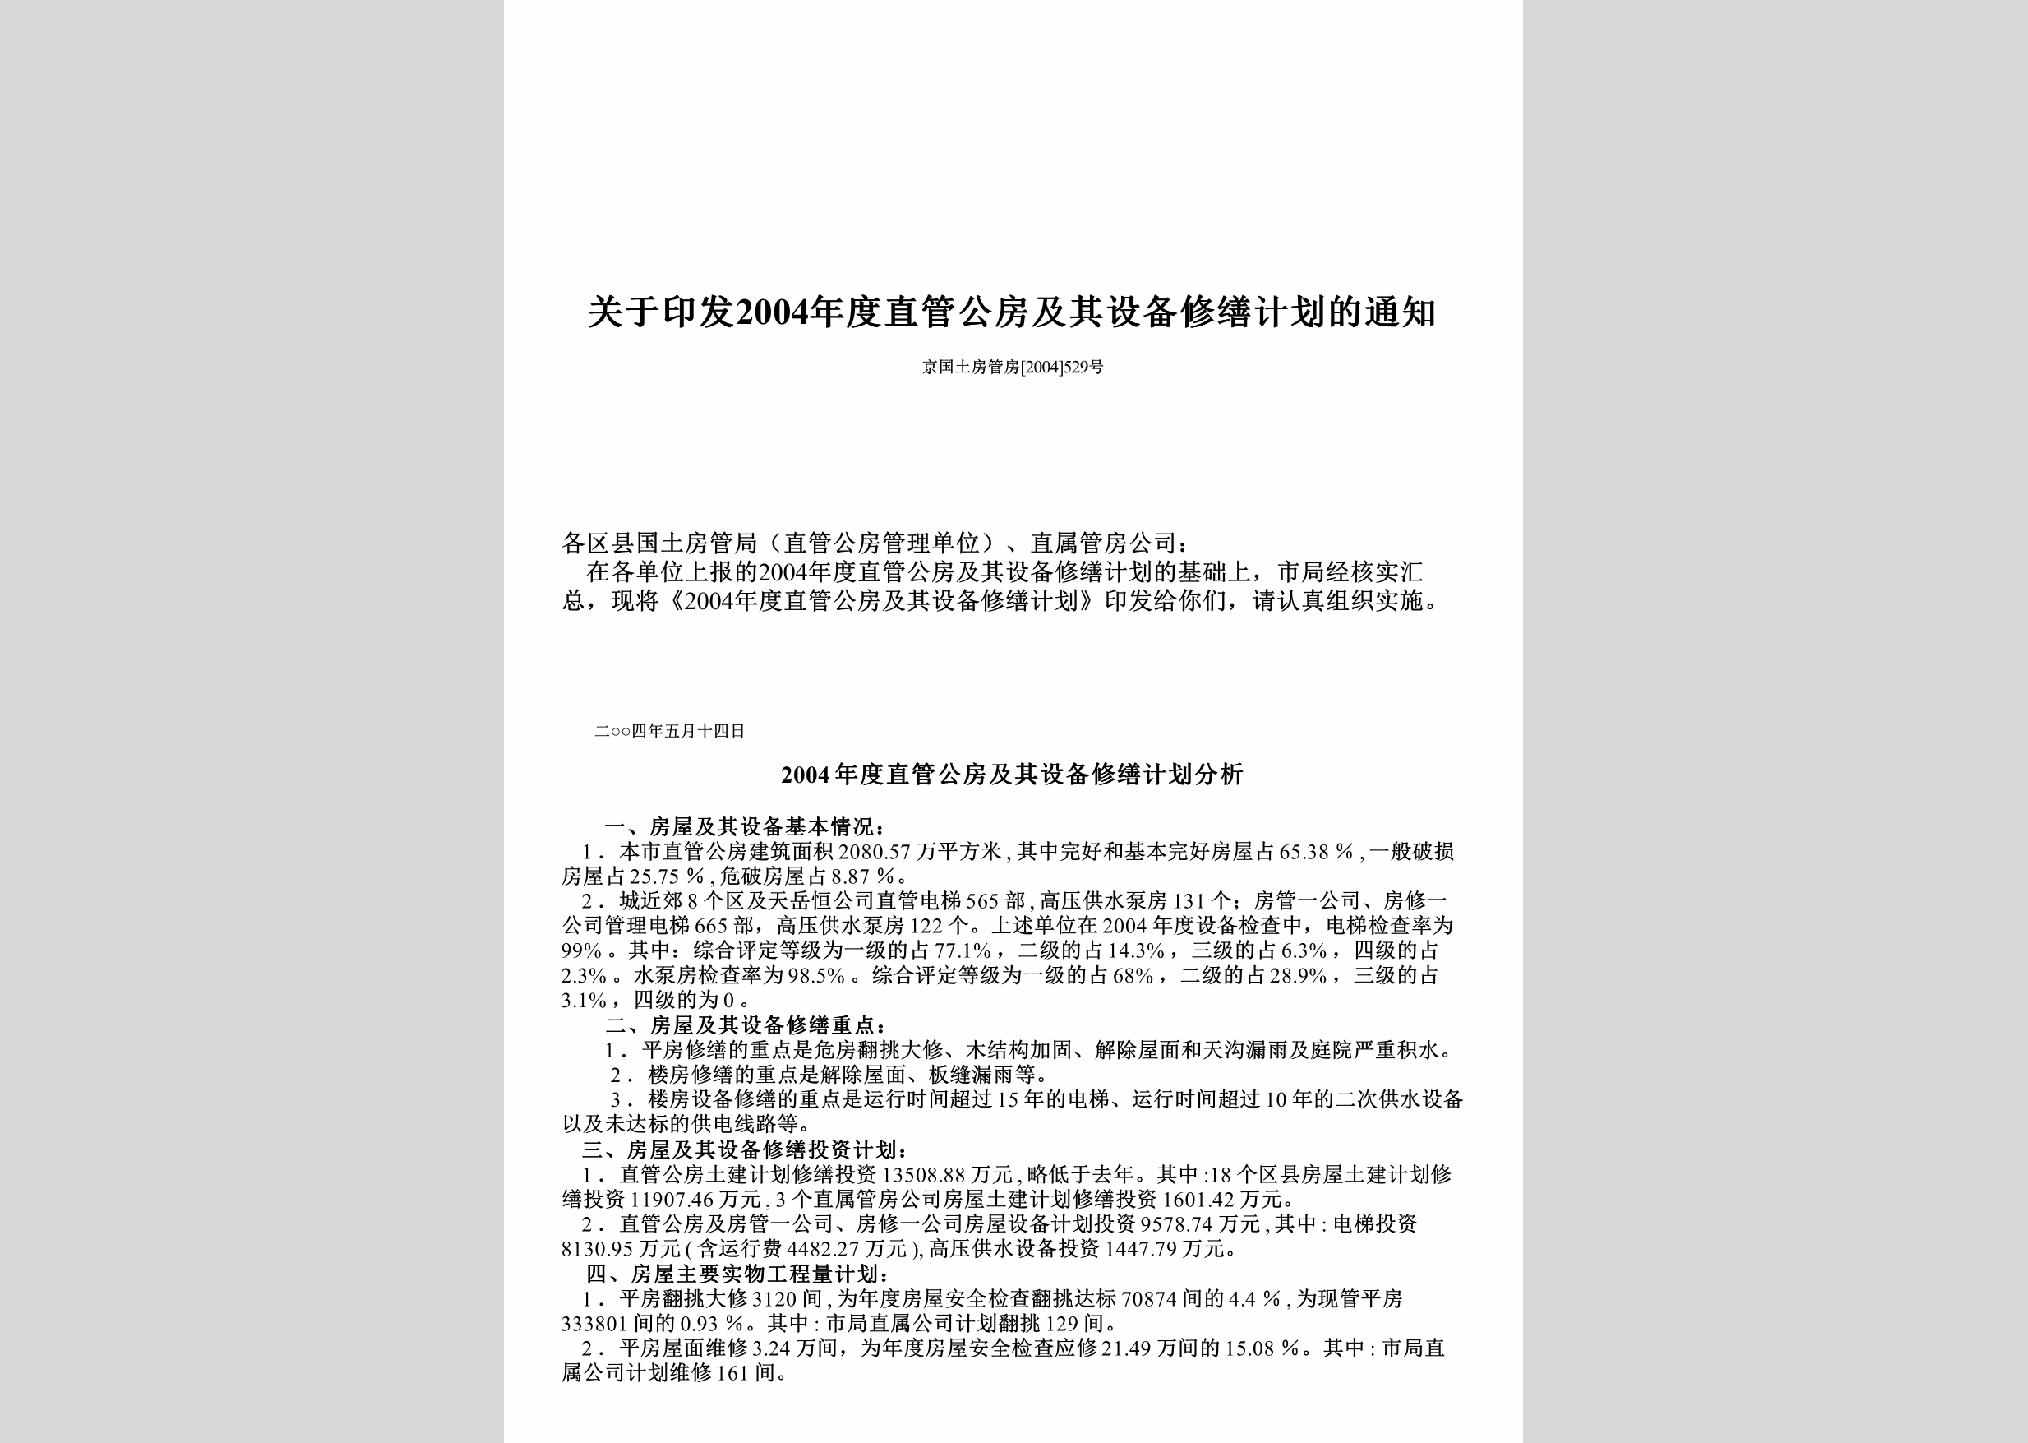 京国土房管房[2004]529号：关于印发2004年度直管公房及其设备修缮计划的通知